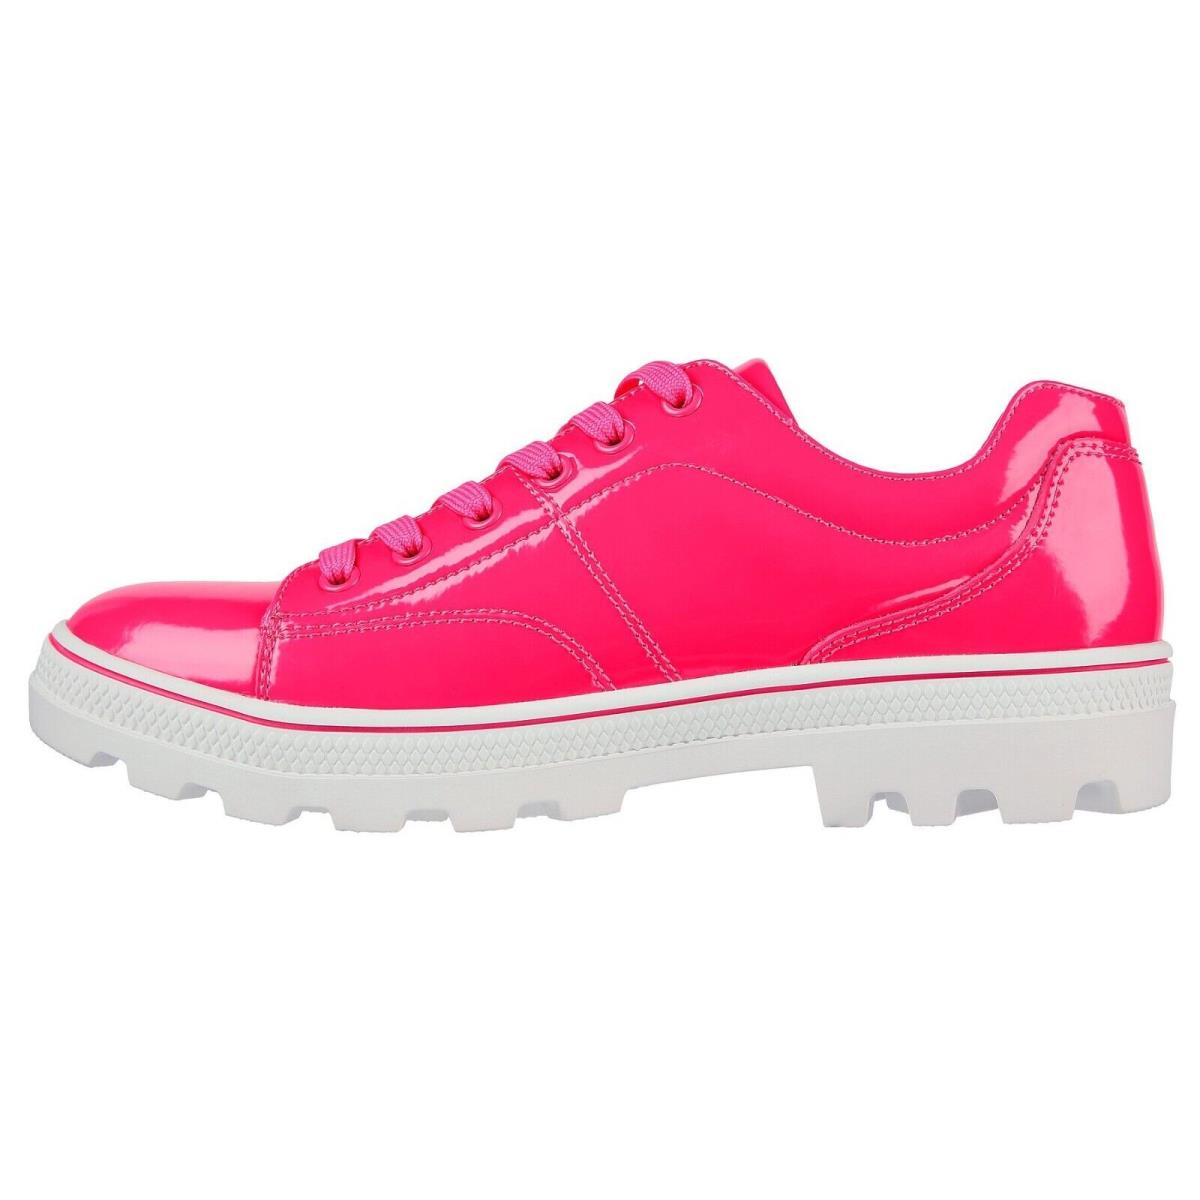 Skechers shoes Roadies - Hot Pink 3